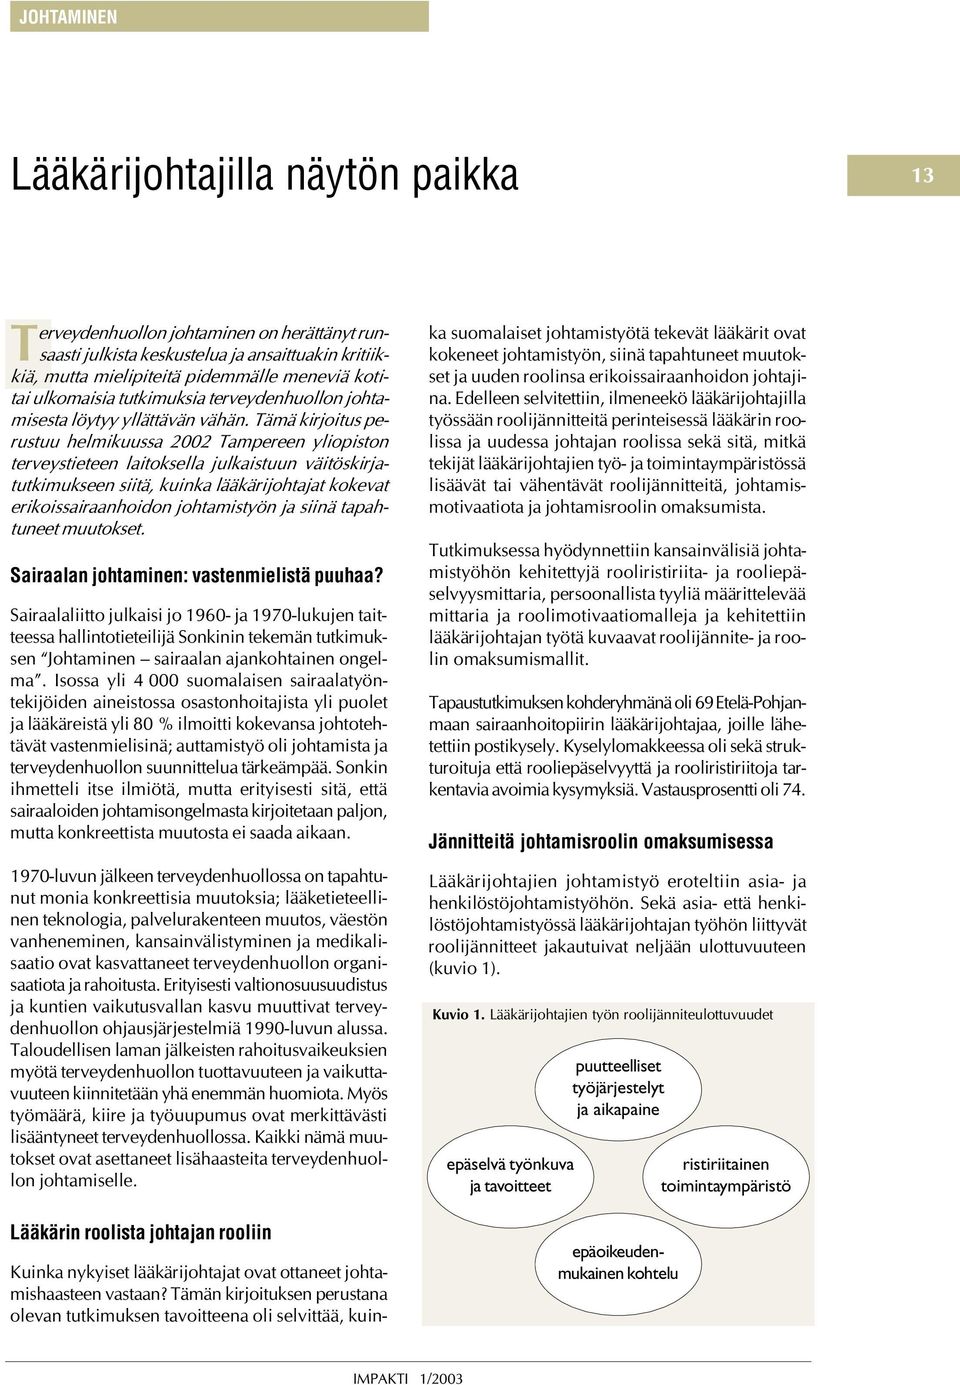 Tämä kirjoitus perustuu helmikuussa 2002 Tamperee yliopisto terveystietee laitoksella julkaistuu väitöskirjatutkimuksee siitä, kuika lääkärijohtajat kokevat erikoissairaahoido johtamistyö ja siiä